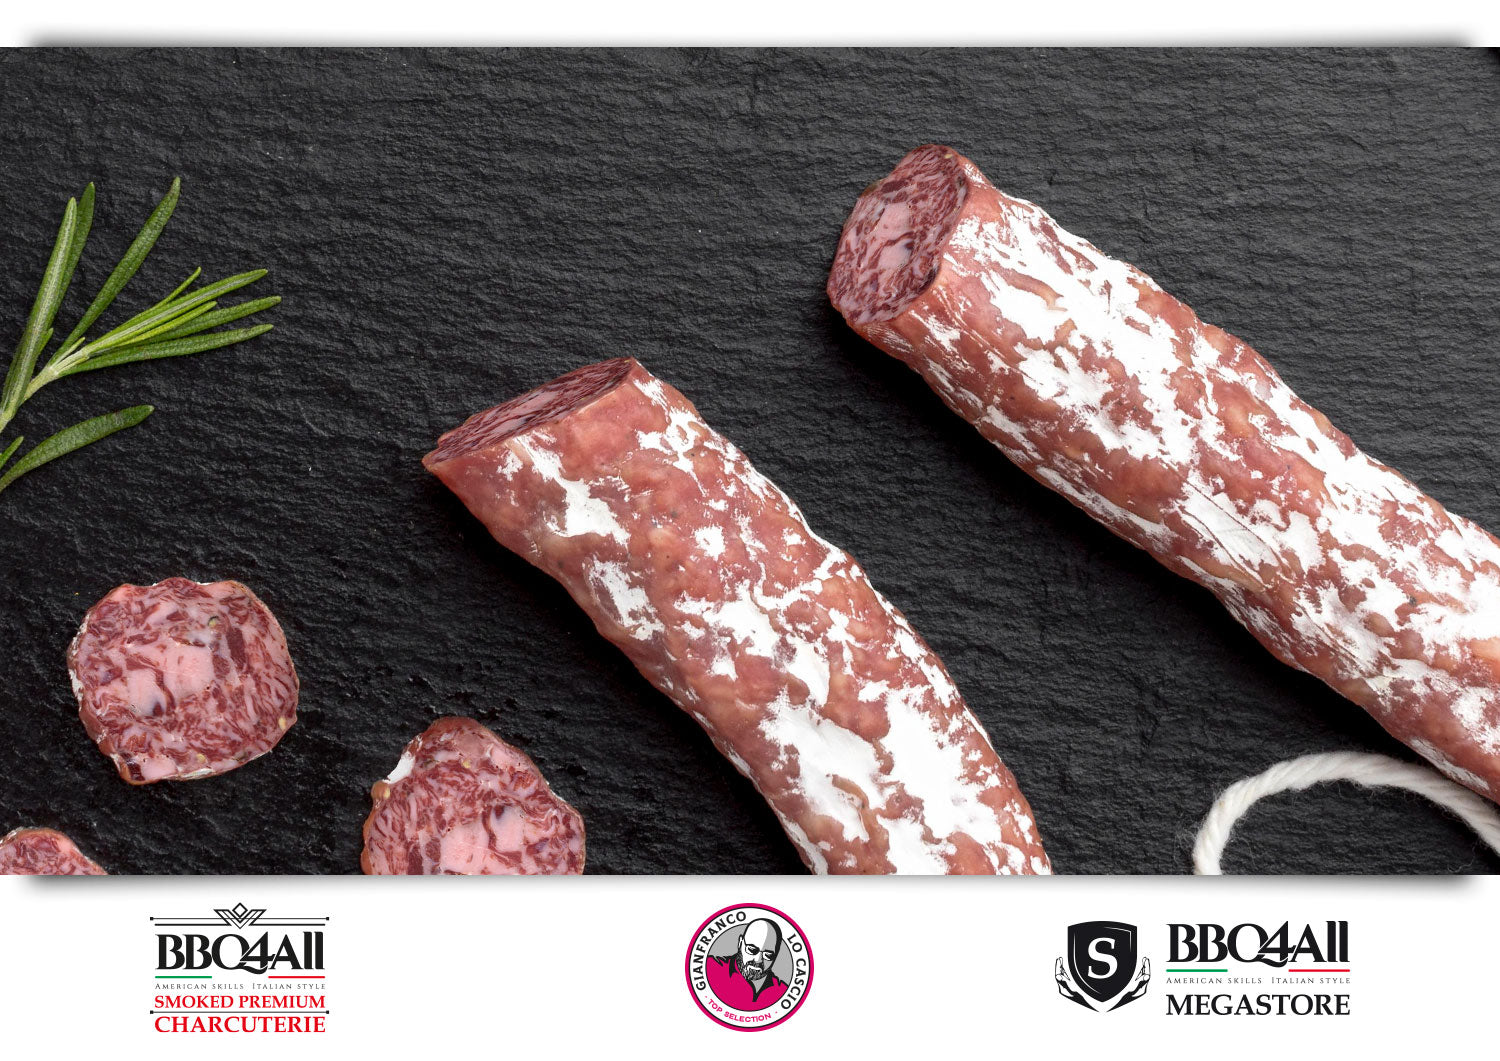 BBQ4All Smoked Premium Charcuterie presenta il salame stagionato di carne di wagyu Shimofuri. Scoprilo subito sul Megastore!